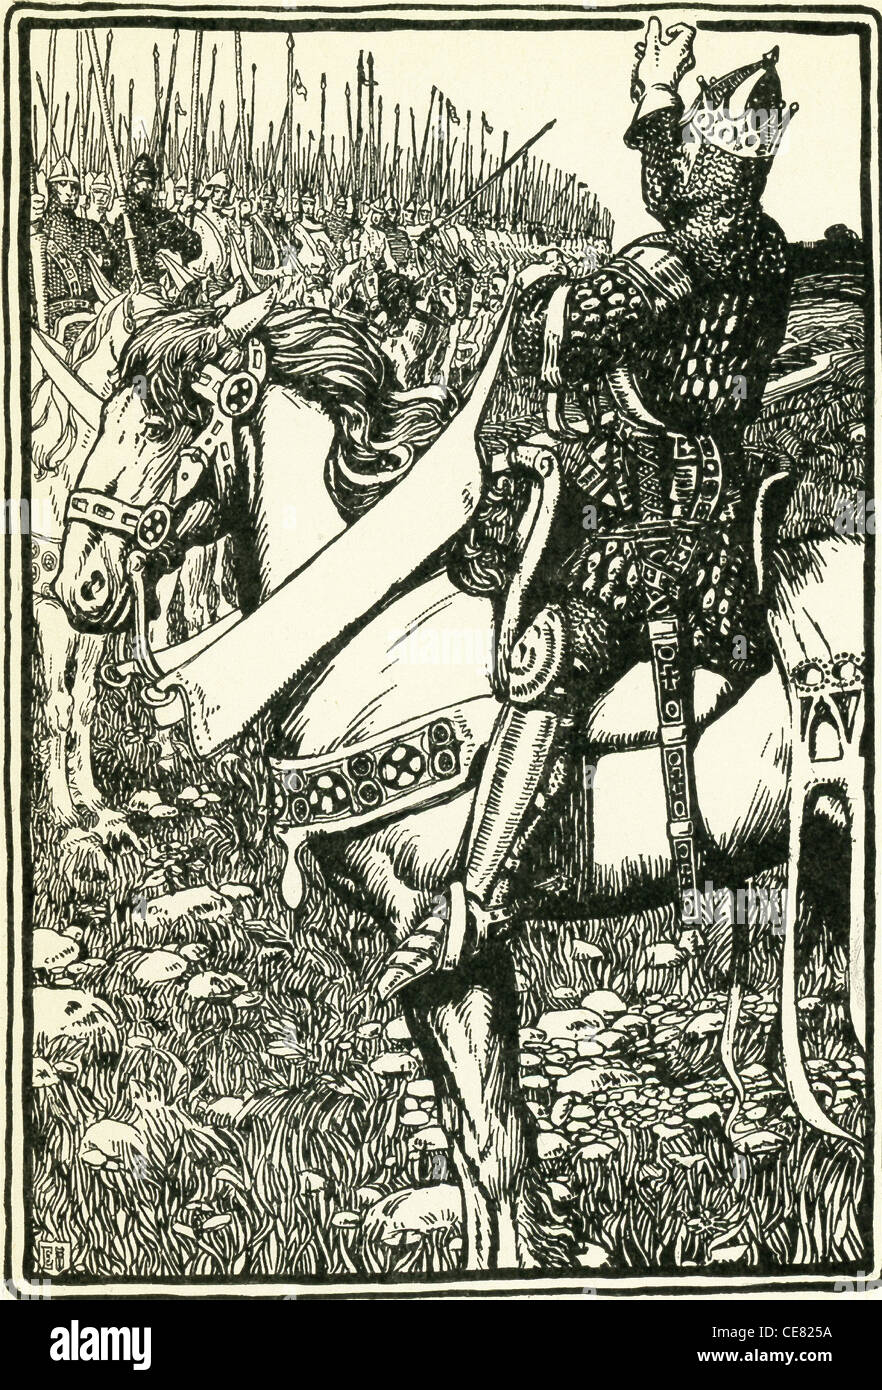 King Arthur ist der legendären britischen Herrscher des späten 5. und frühen 6. Jahrhundert. Hier befasst sich mit Arthur seine Truppen. Stockfoto